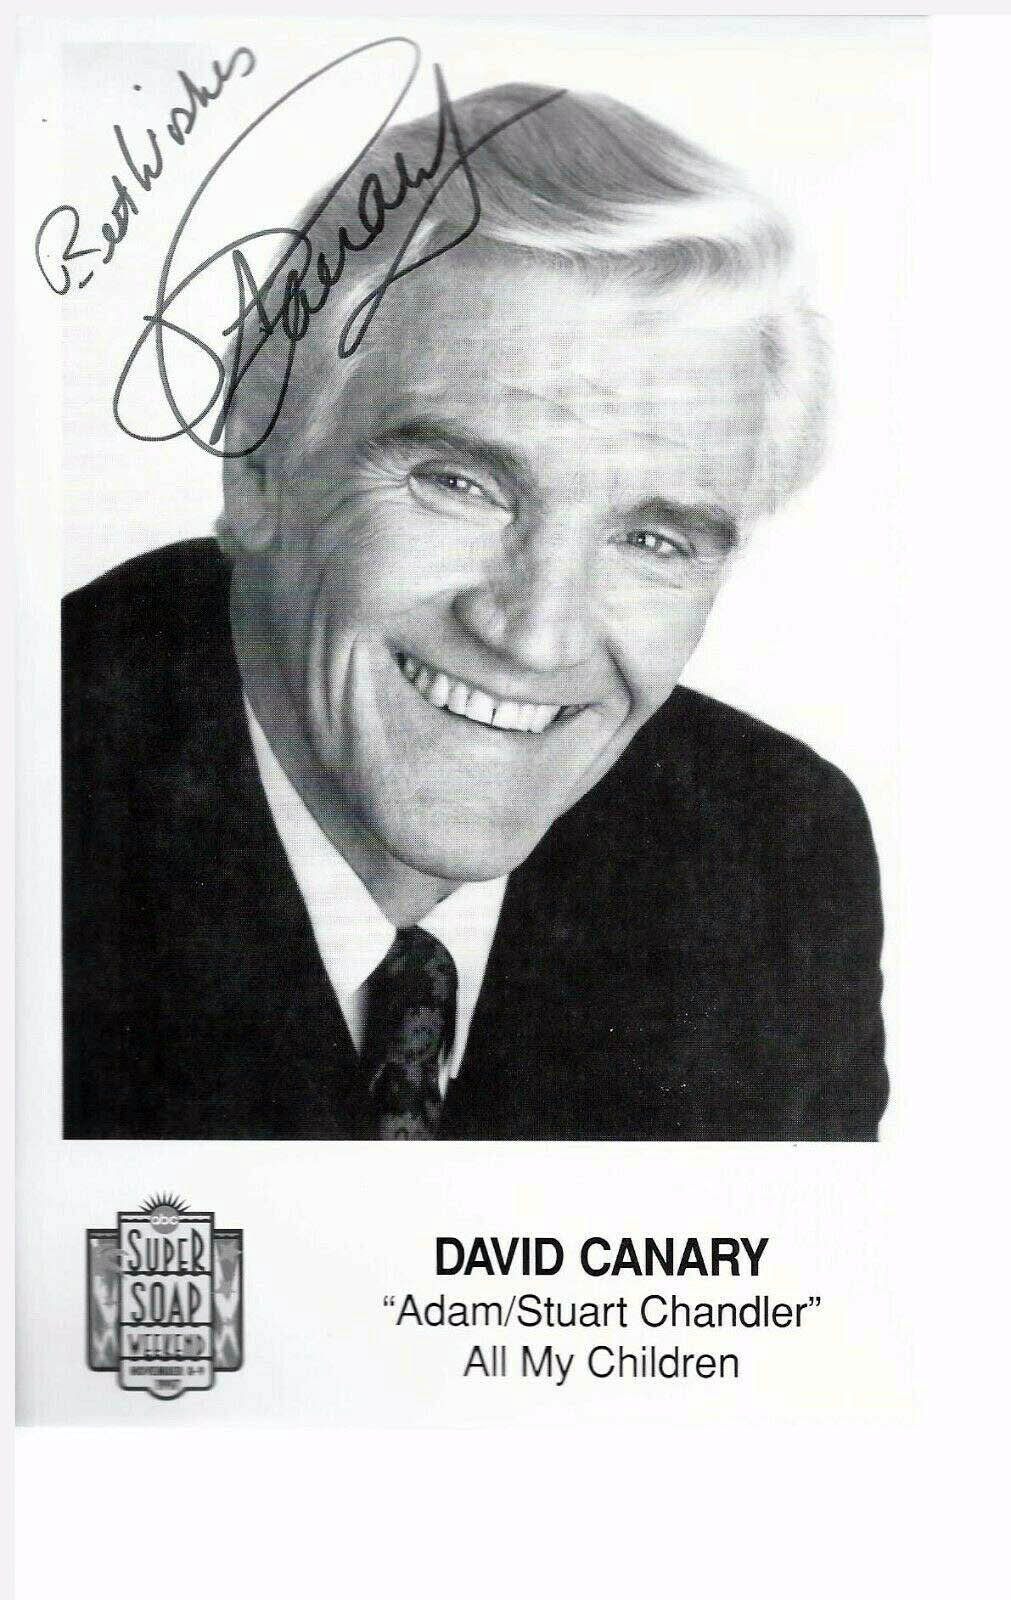 David Canary